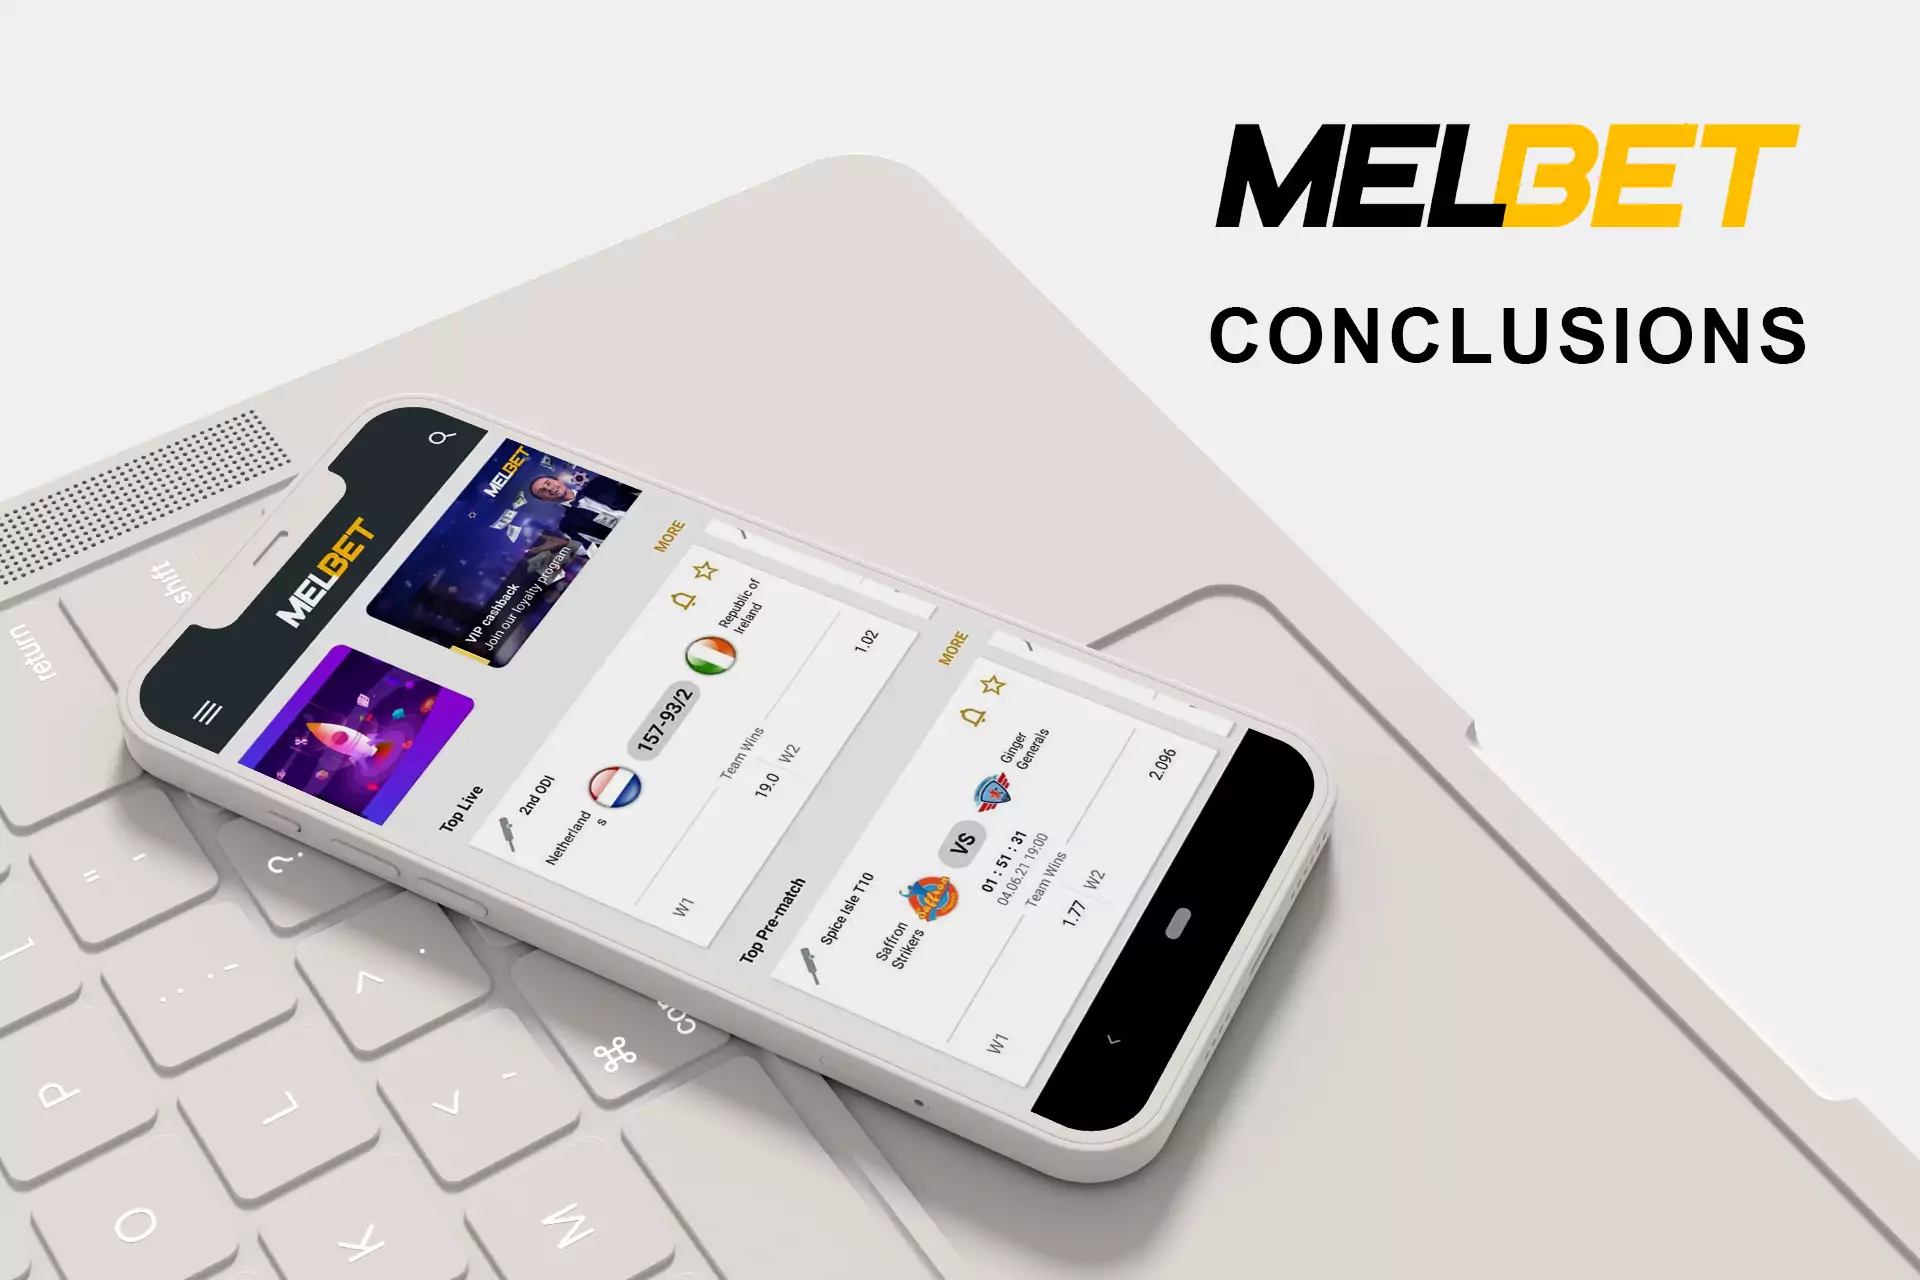 Android और iOS के लिए Melbet ऐप की गुणवत्ता के बारे में निष्कर्ष पढ़ें।